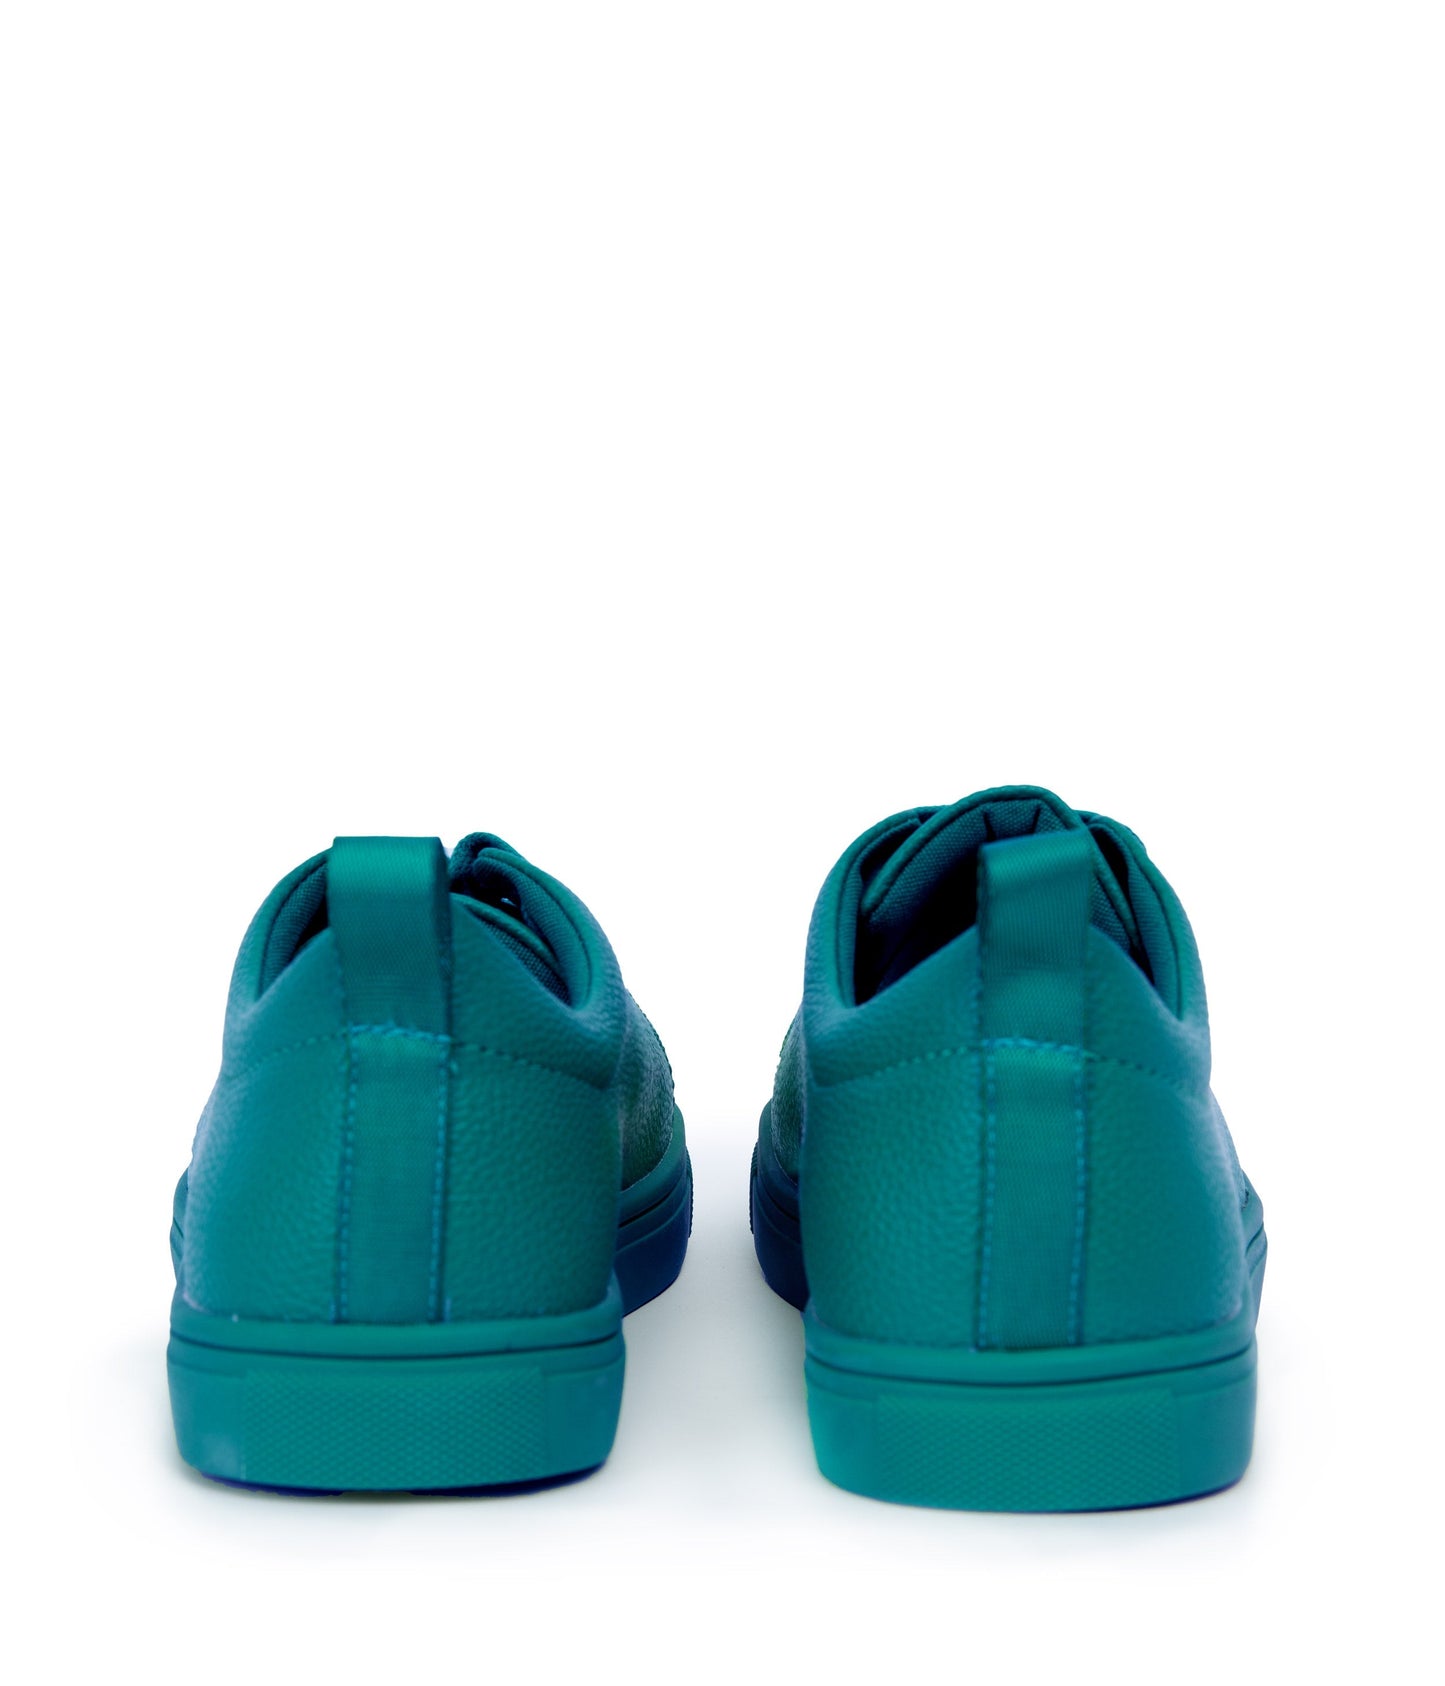 AAHANA Women's Vegan Sneakers | Color: Teal - variant::teal